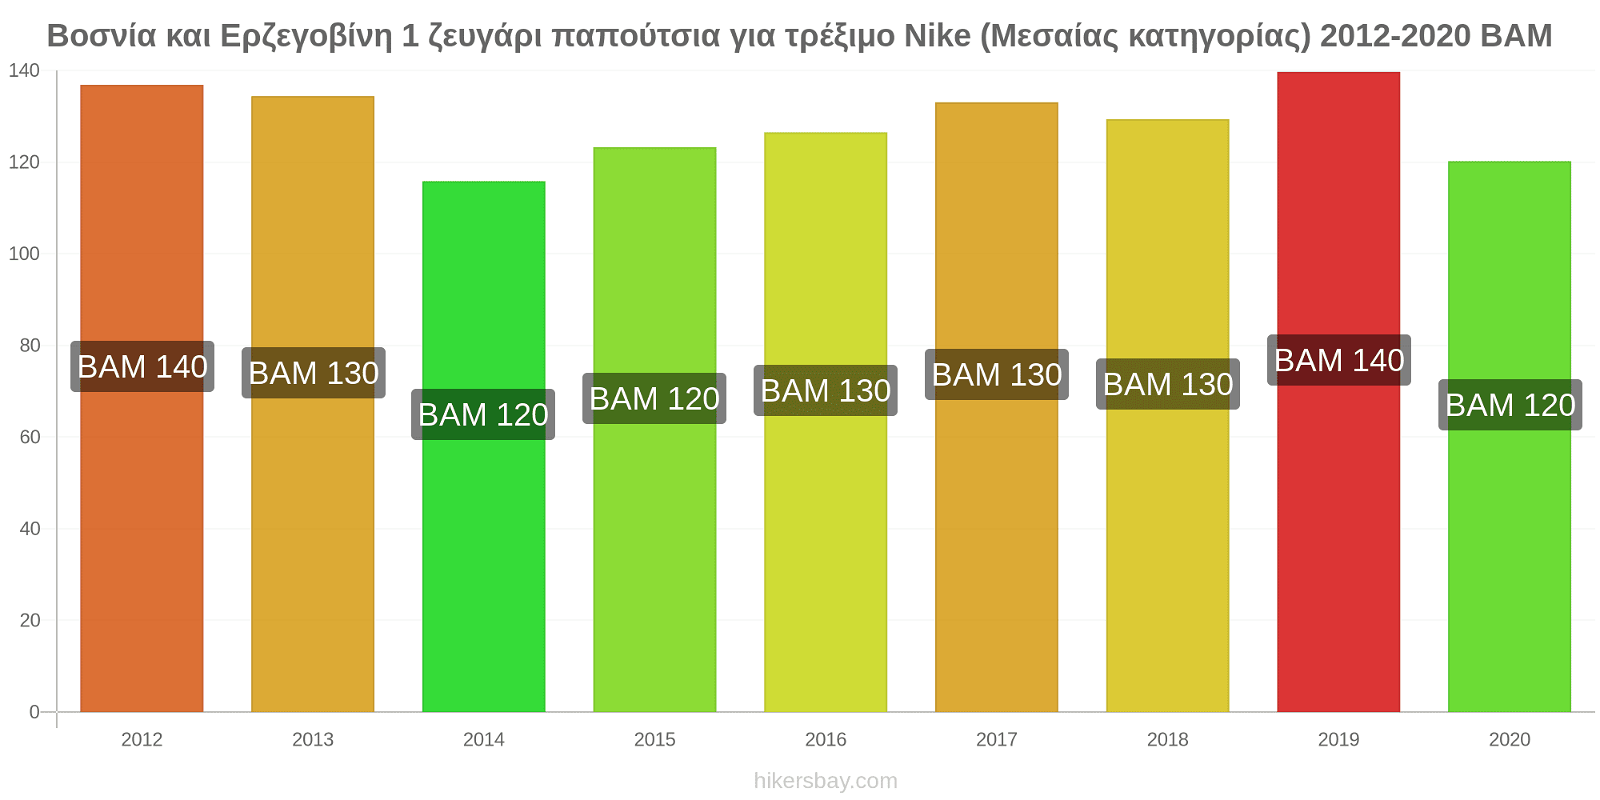 Βοσνία και Ερζεγοβίνη αλλαγές τιμών 1 ζευγάρι παπούτσια για τρέξιμο Nike (Μεσαίας κατηγορίας) hikersbay.com